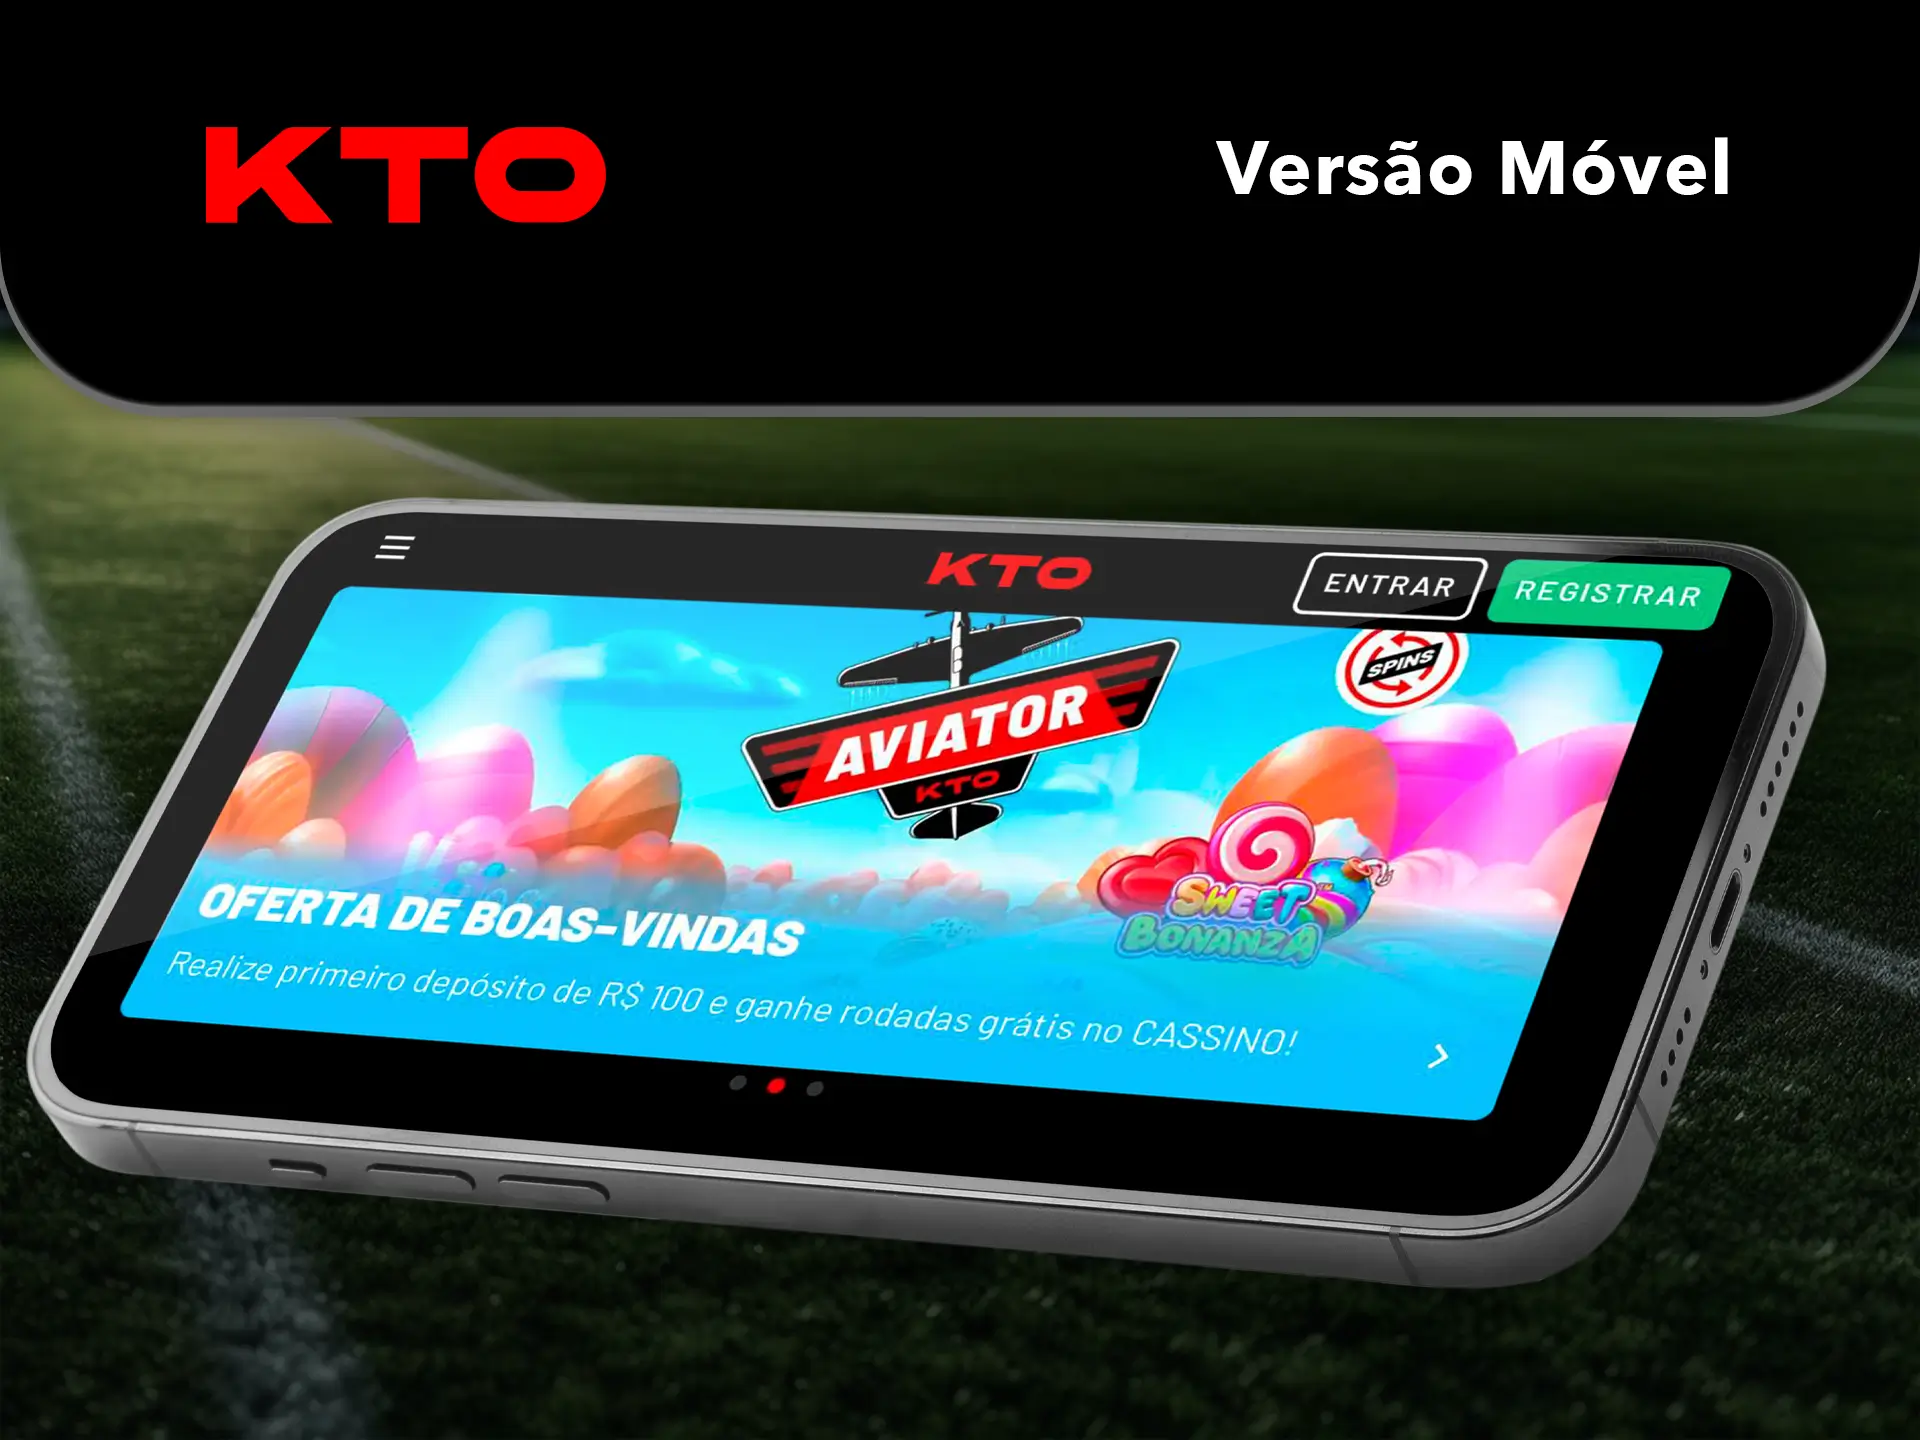 Utilize o site móvel da KTO que tem todas as características e funcionalidades para apostar e para as suas slots favoritas.